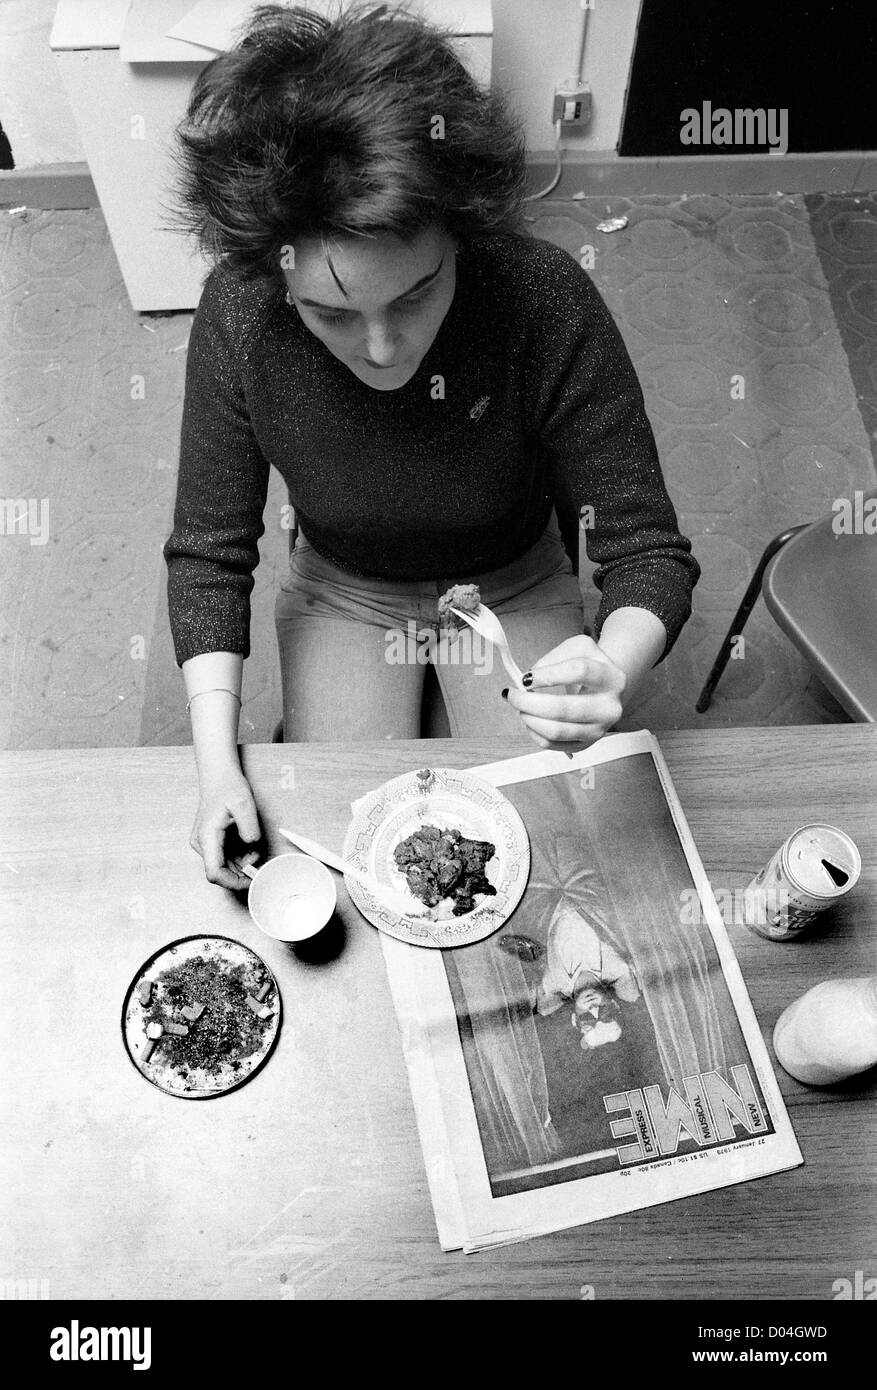 Adolescente punk ragazza che legge il NME mentre mangia pranzo 27/1/79 FOTO DI DAVID BAGNALL adolescente giovanile britannico anni '1970 punk era storia sociale Inghilterra inglese Foto Stock